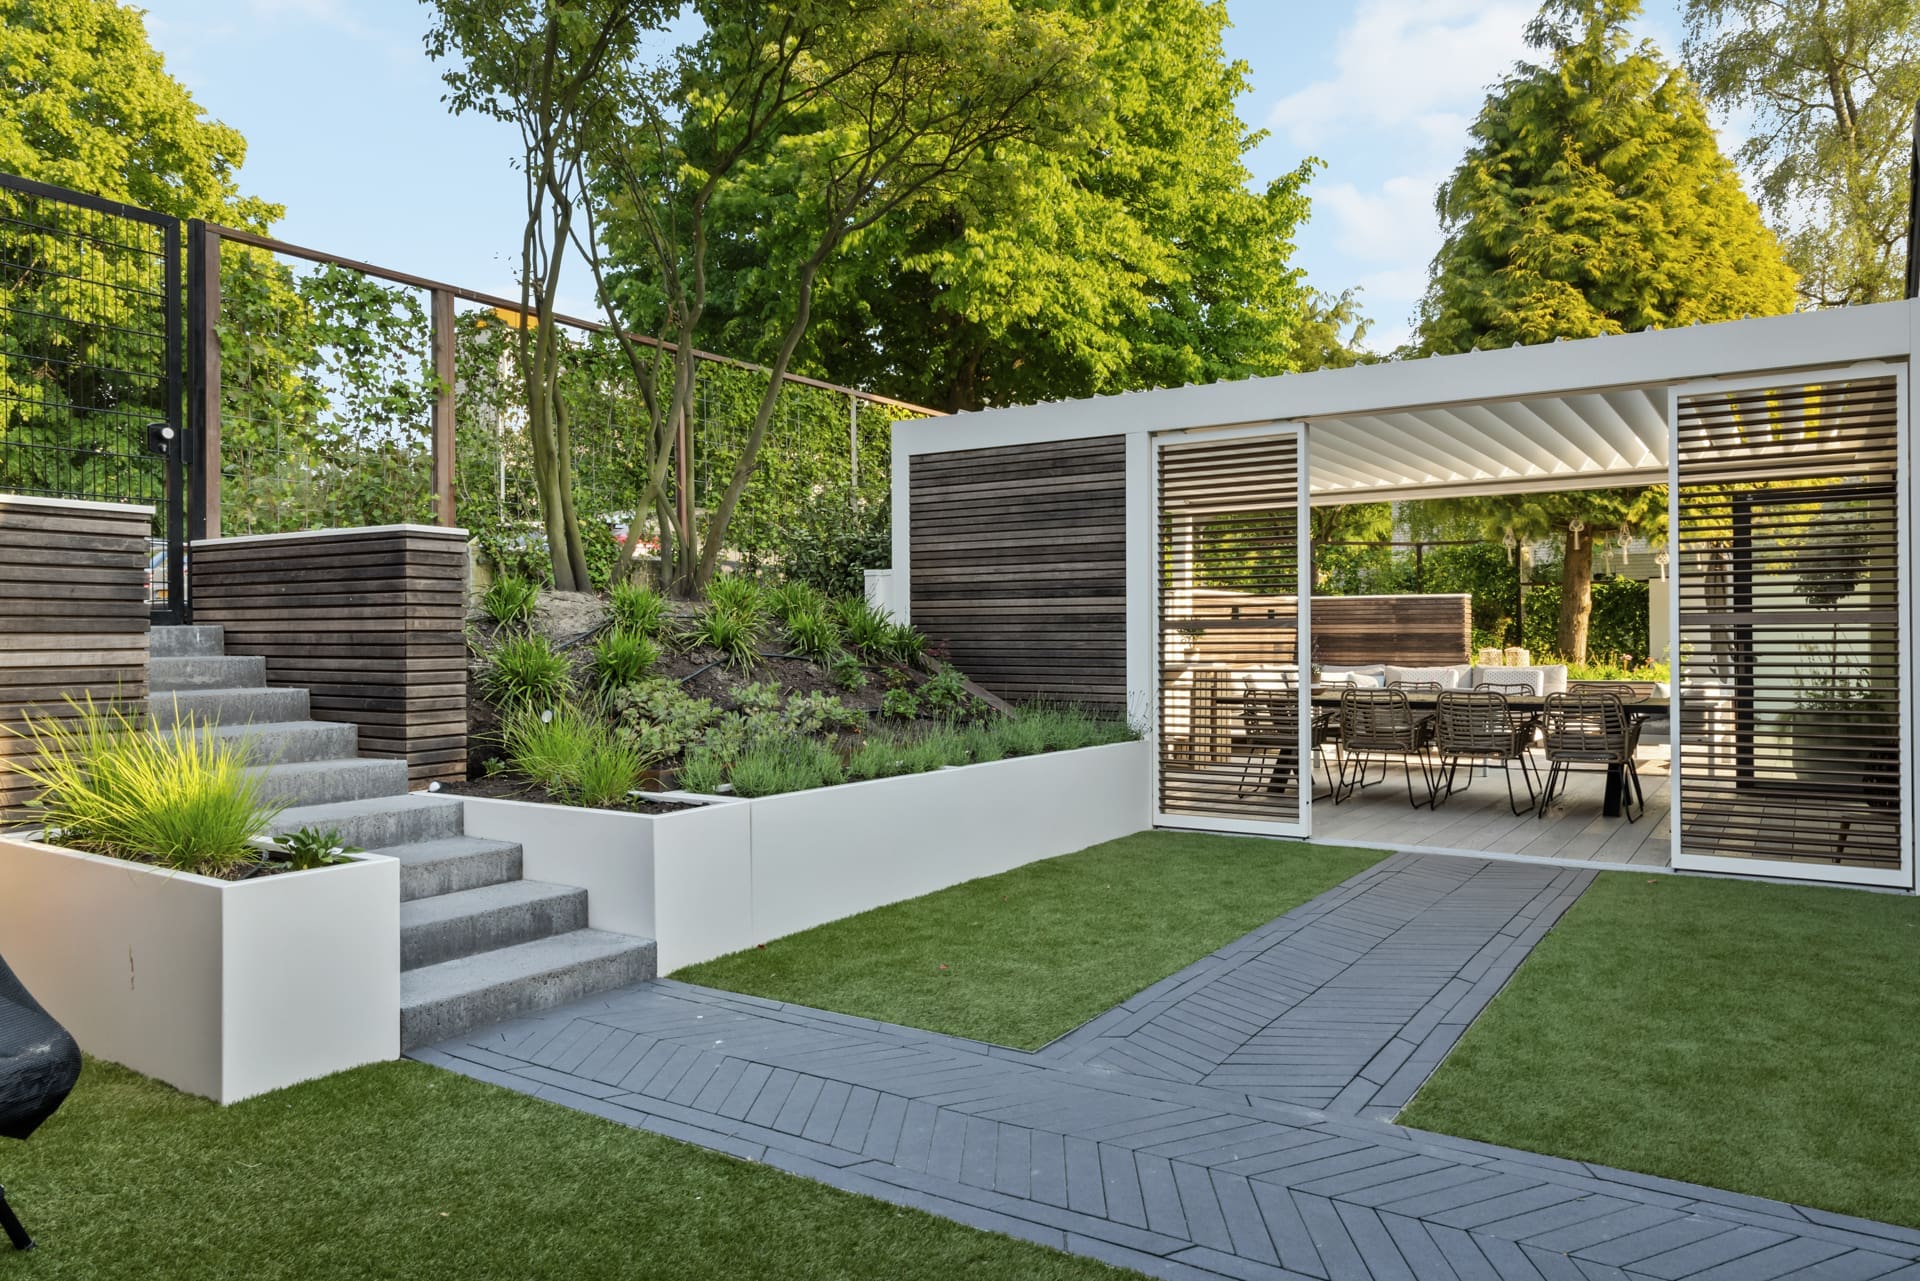 Modern garden with prominent outdoor kitchen